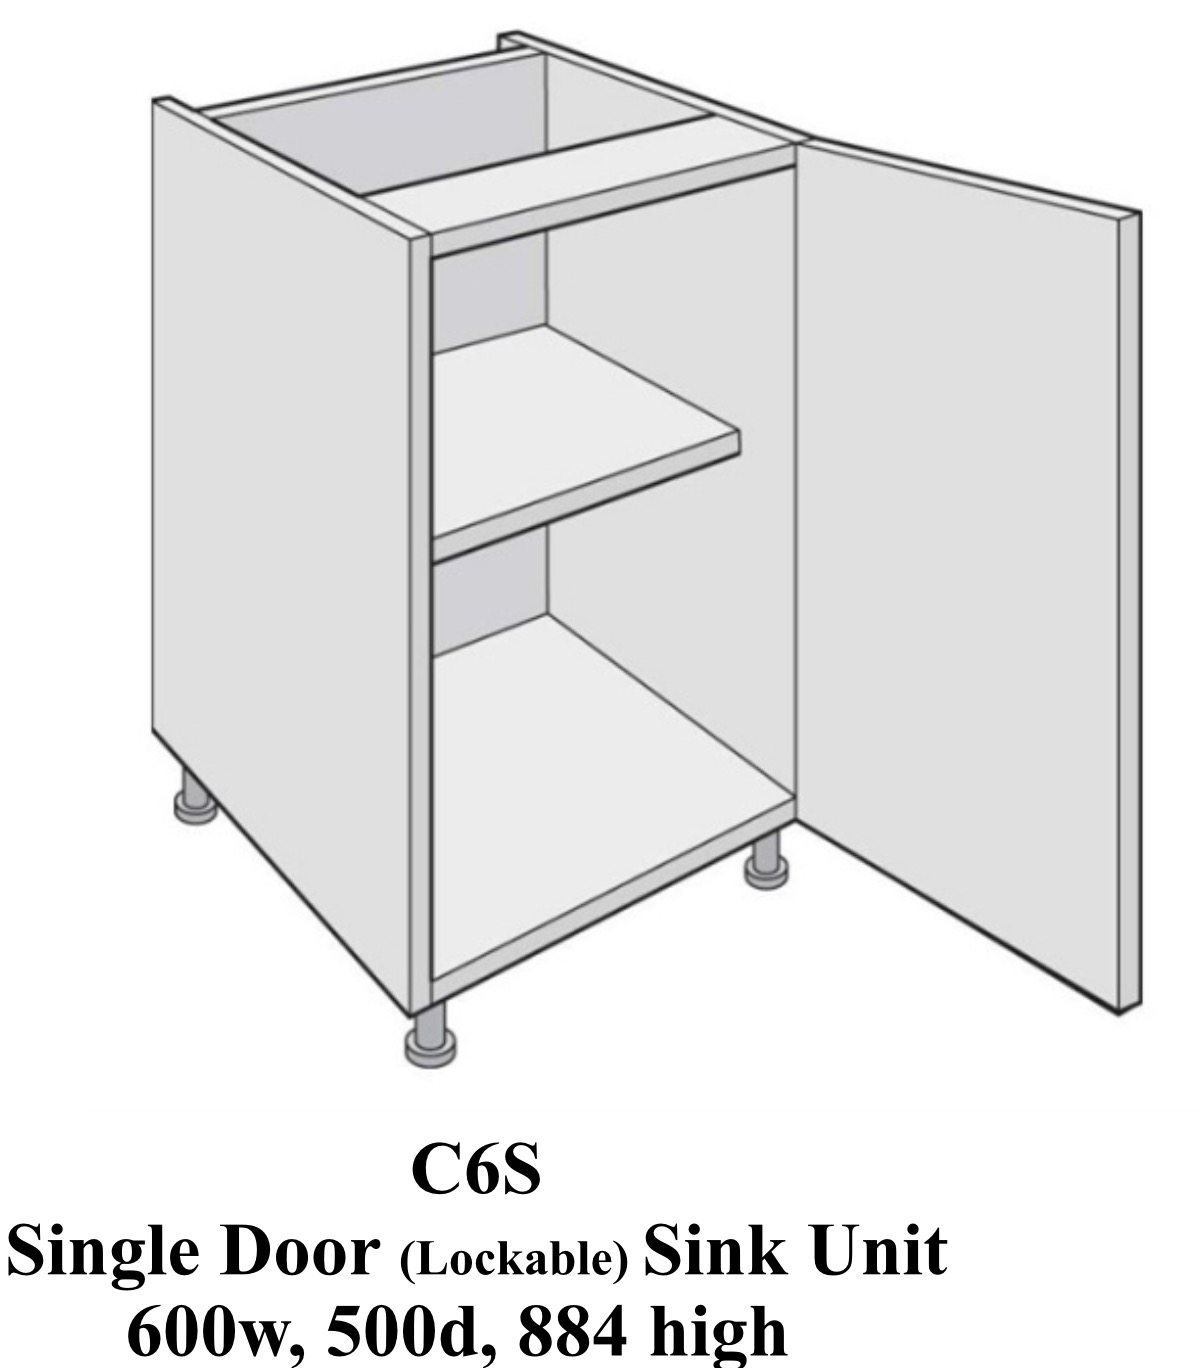 Single door laboratory classroom sink cabinet  600 wide